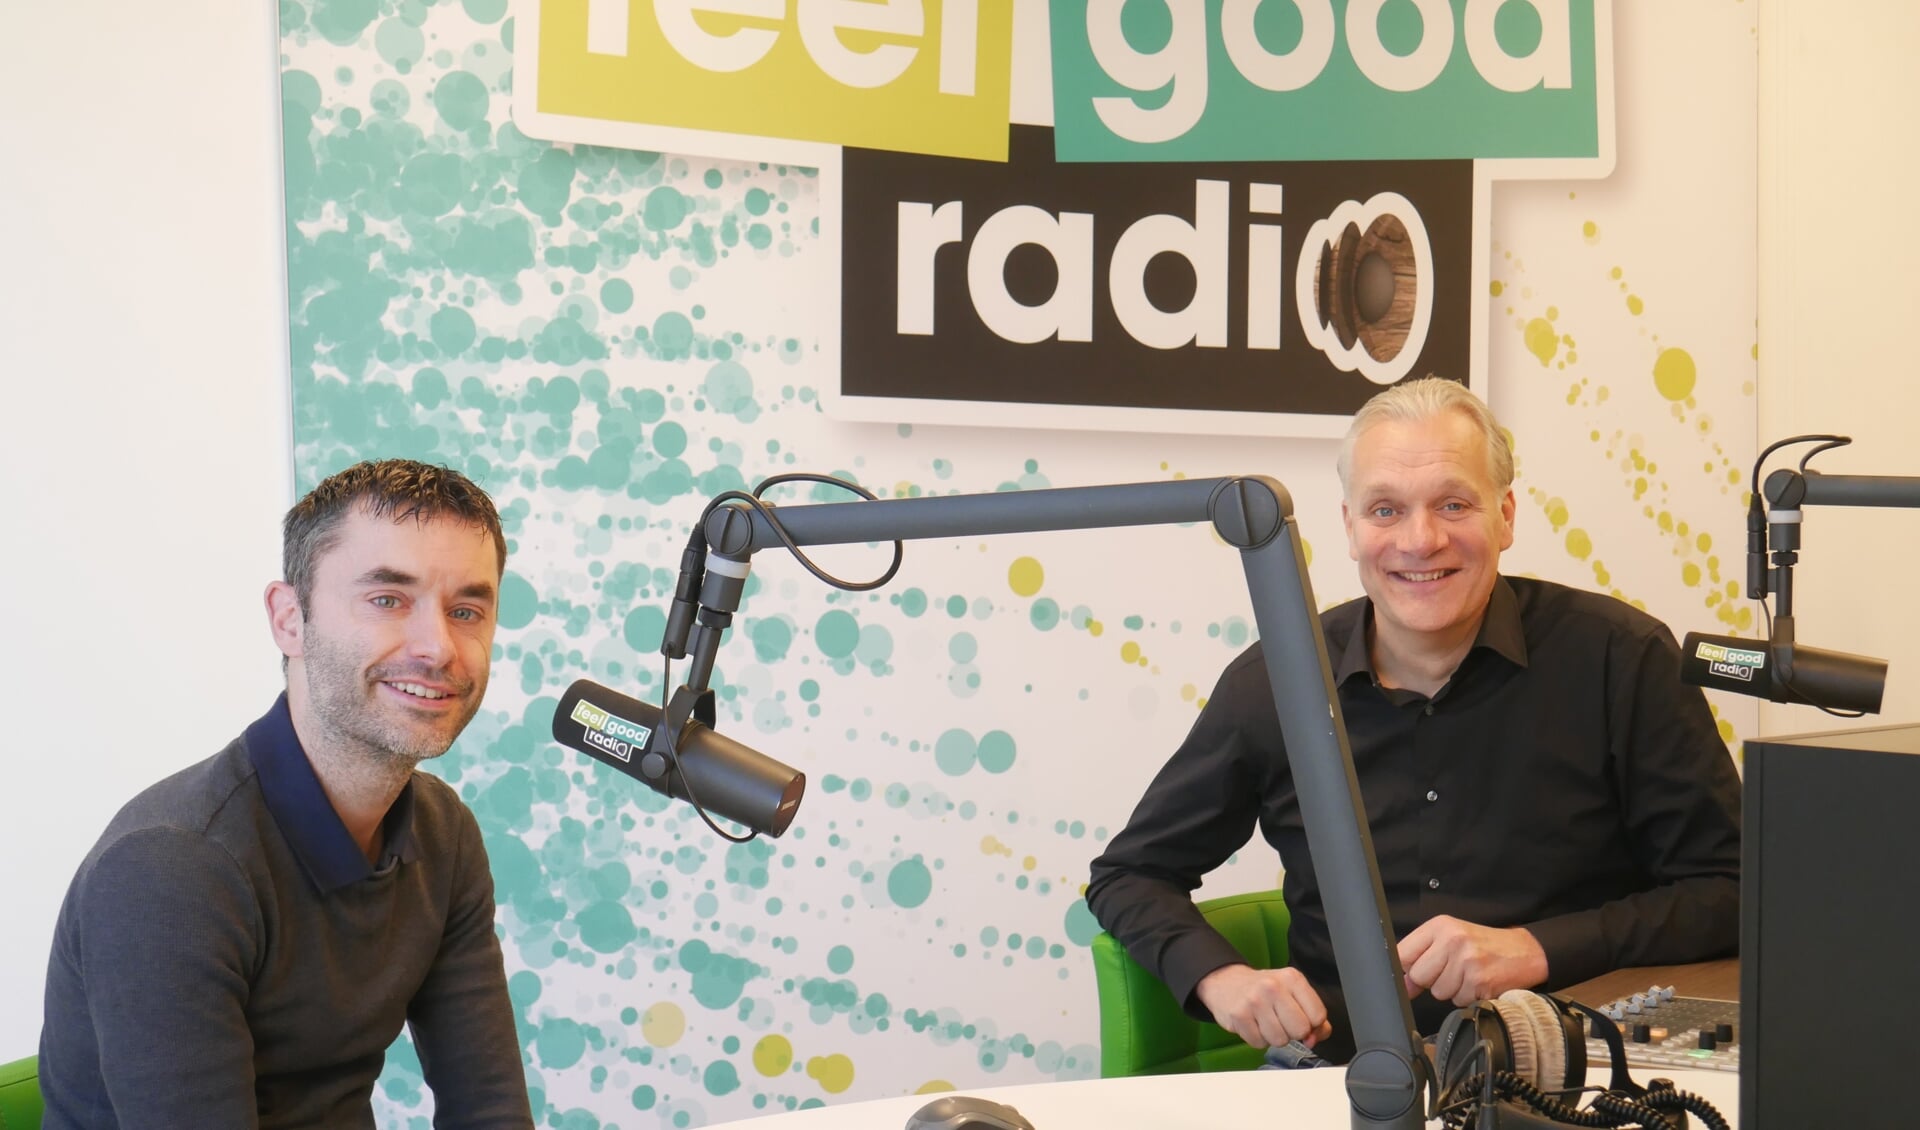 Joey Koeijvoets en Stephan Koot werken vanuit passie en enthousiasme voor Feel Good Radio.